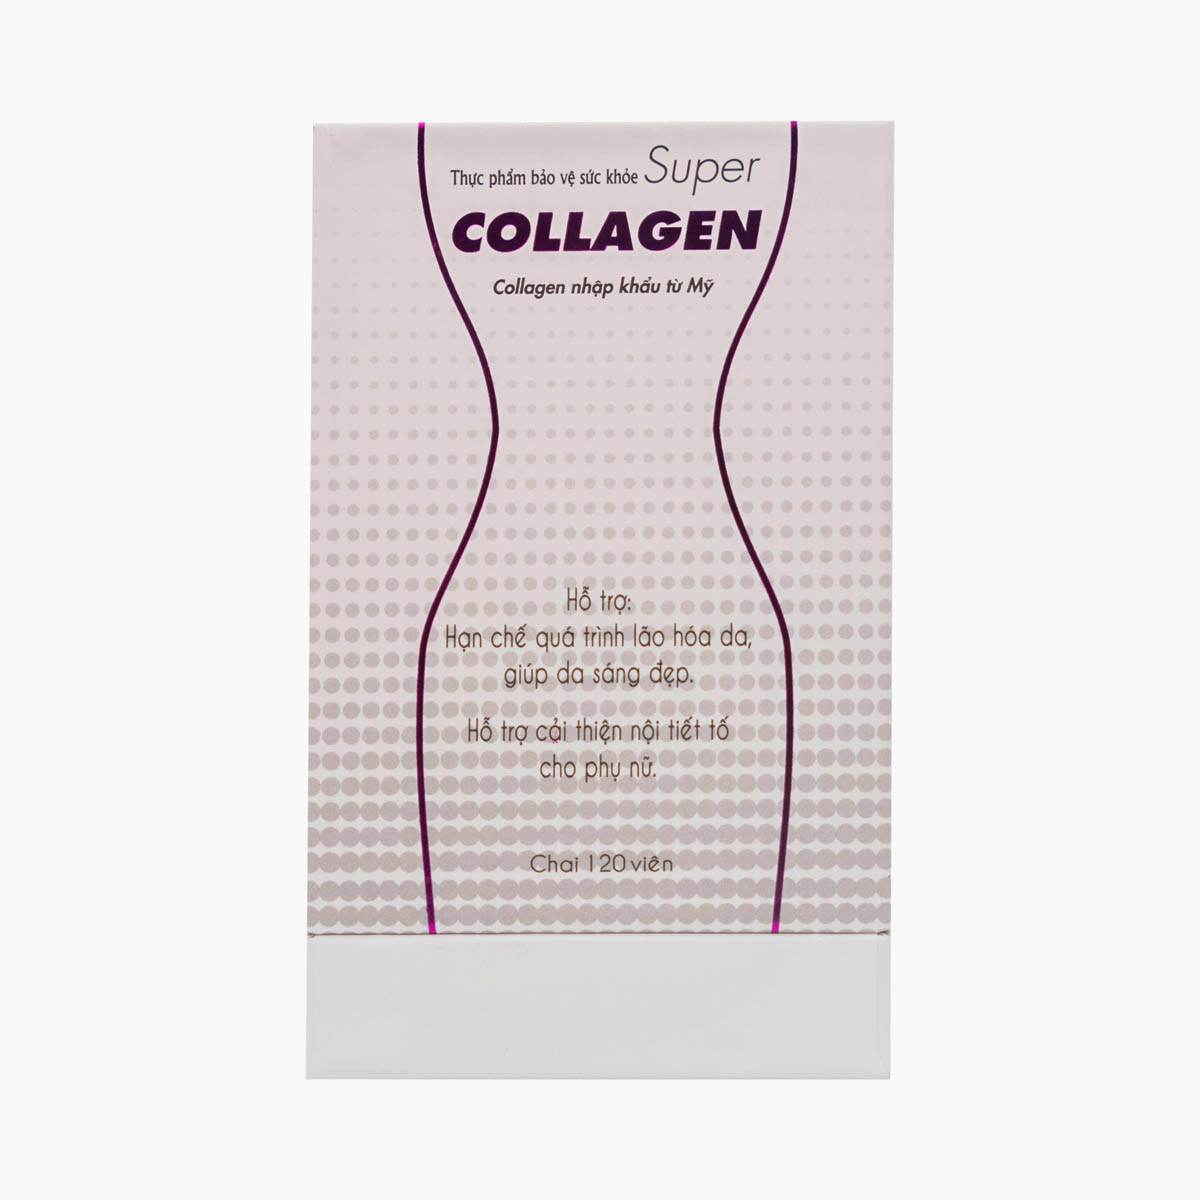 Super Collagen - Hỗ trợ làm chậm quá trình lão hóa da.